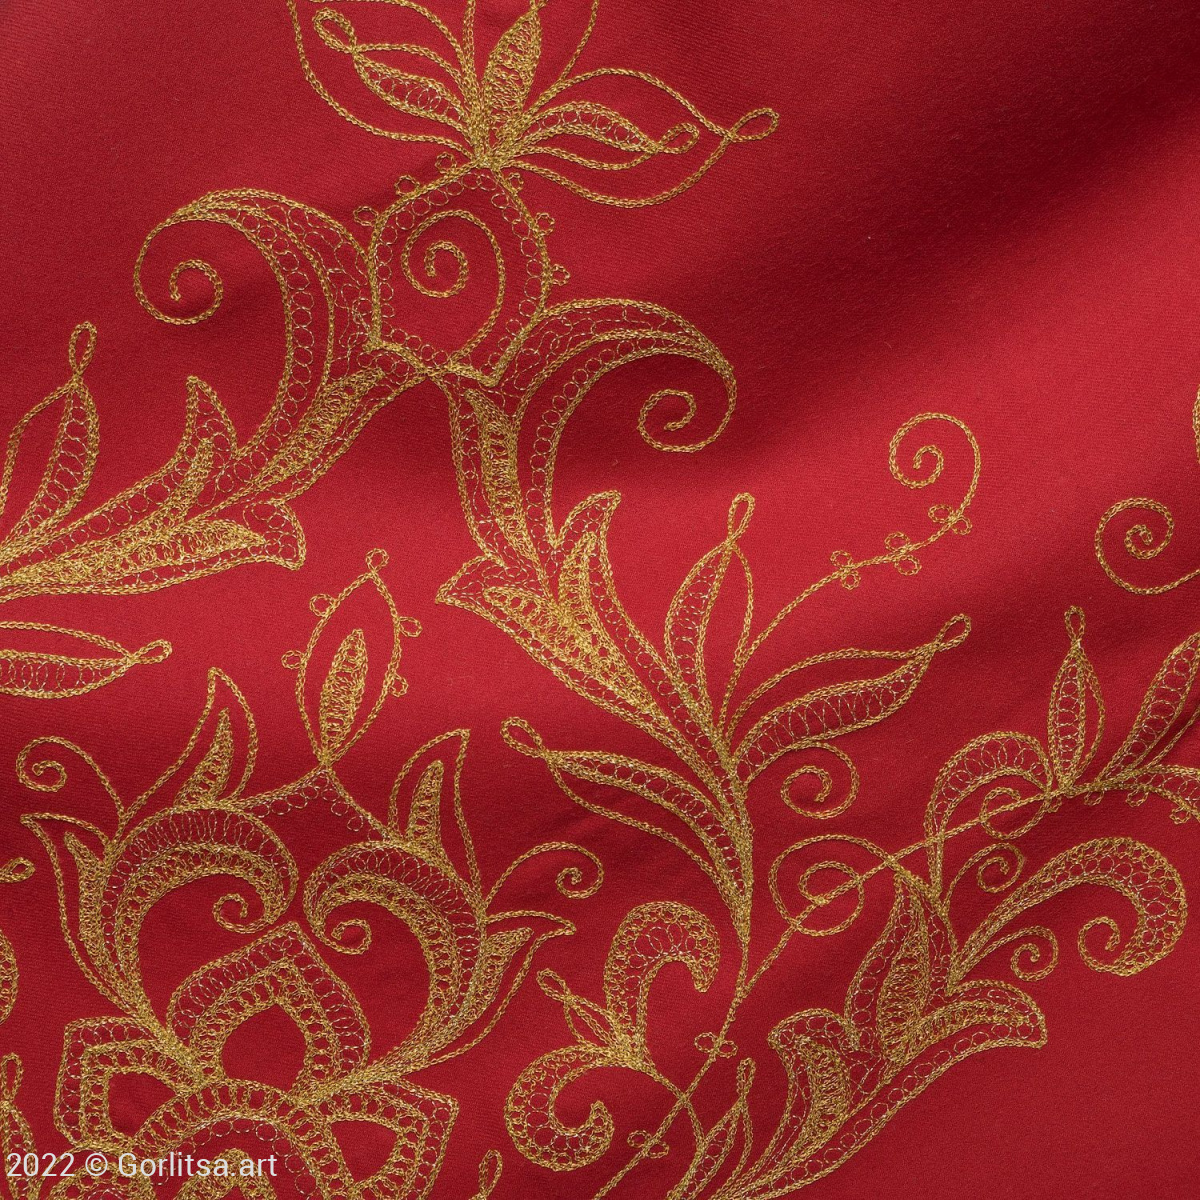 Платок «Орхидея», р.1058, цвет: красный, /золото/, шерсть шерсть Торжокские золотошвеи фото 4